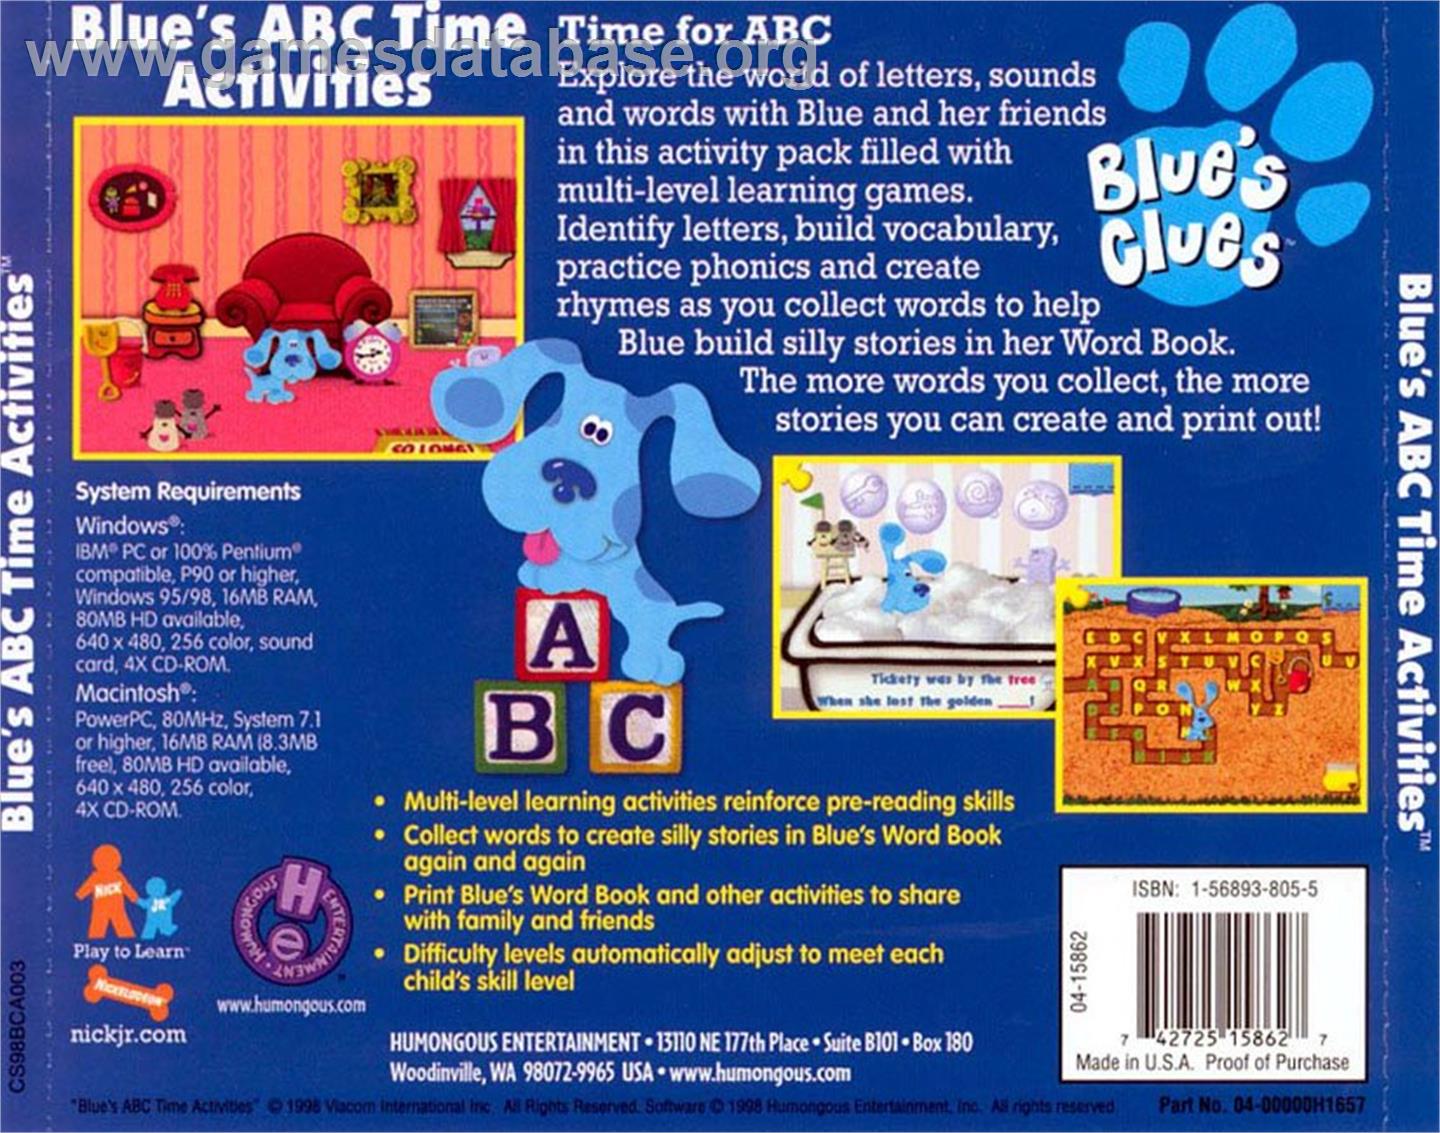 Blue's Clues: Blue's ABC Time Activities - ScummVM - Artwork - Box Back